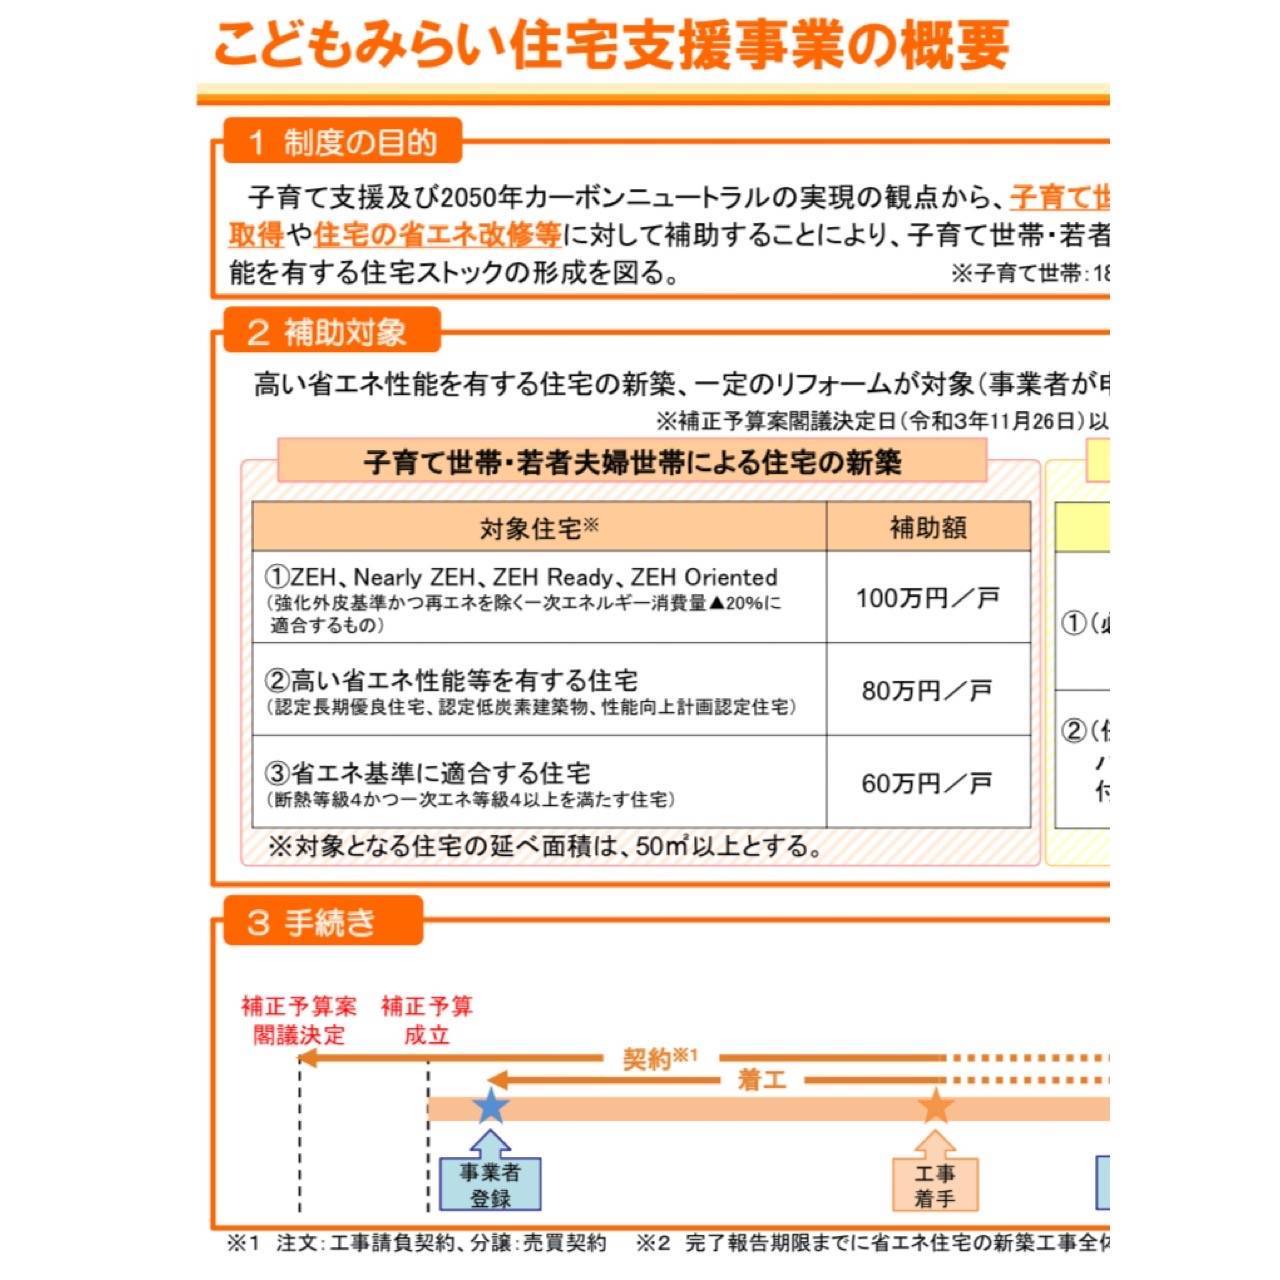 こどもみらい住宅支援事業 原口建材店 熊本のブログ 写真1